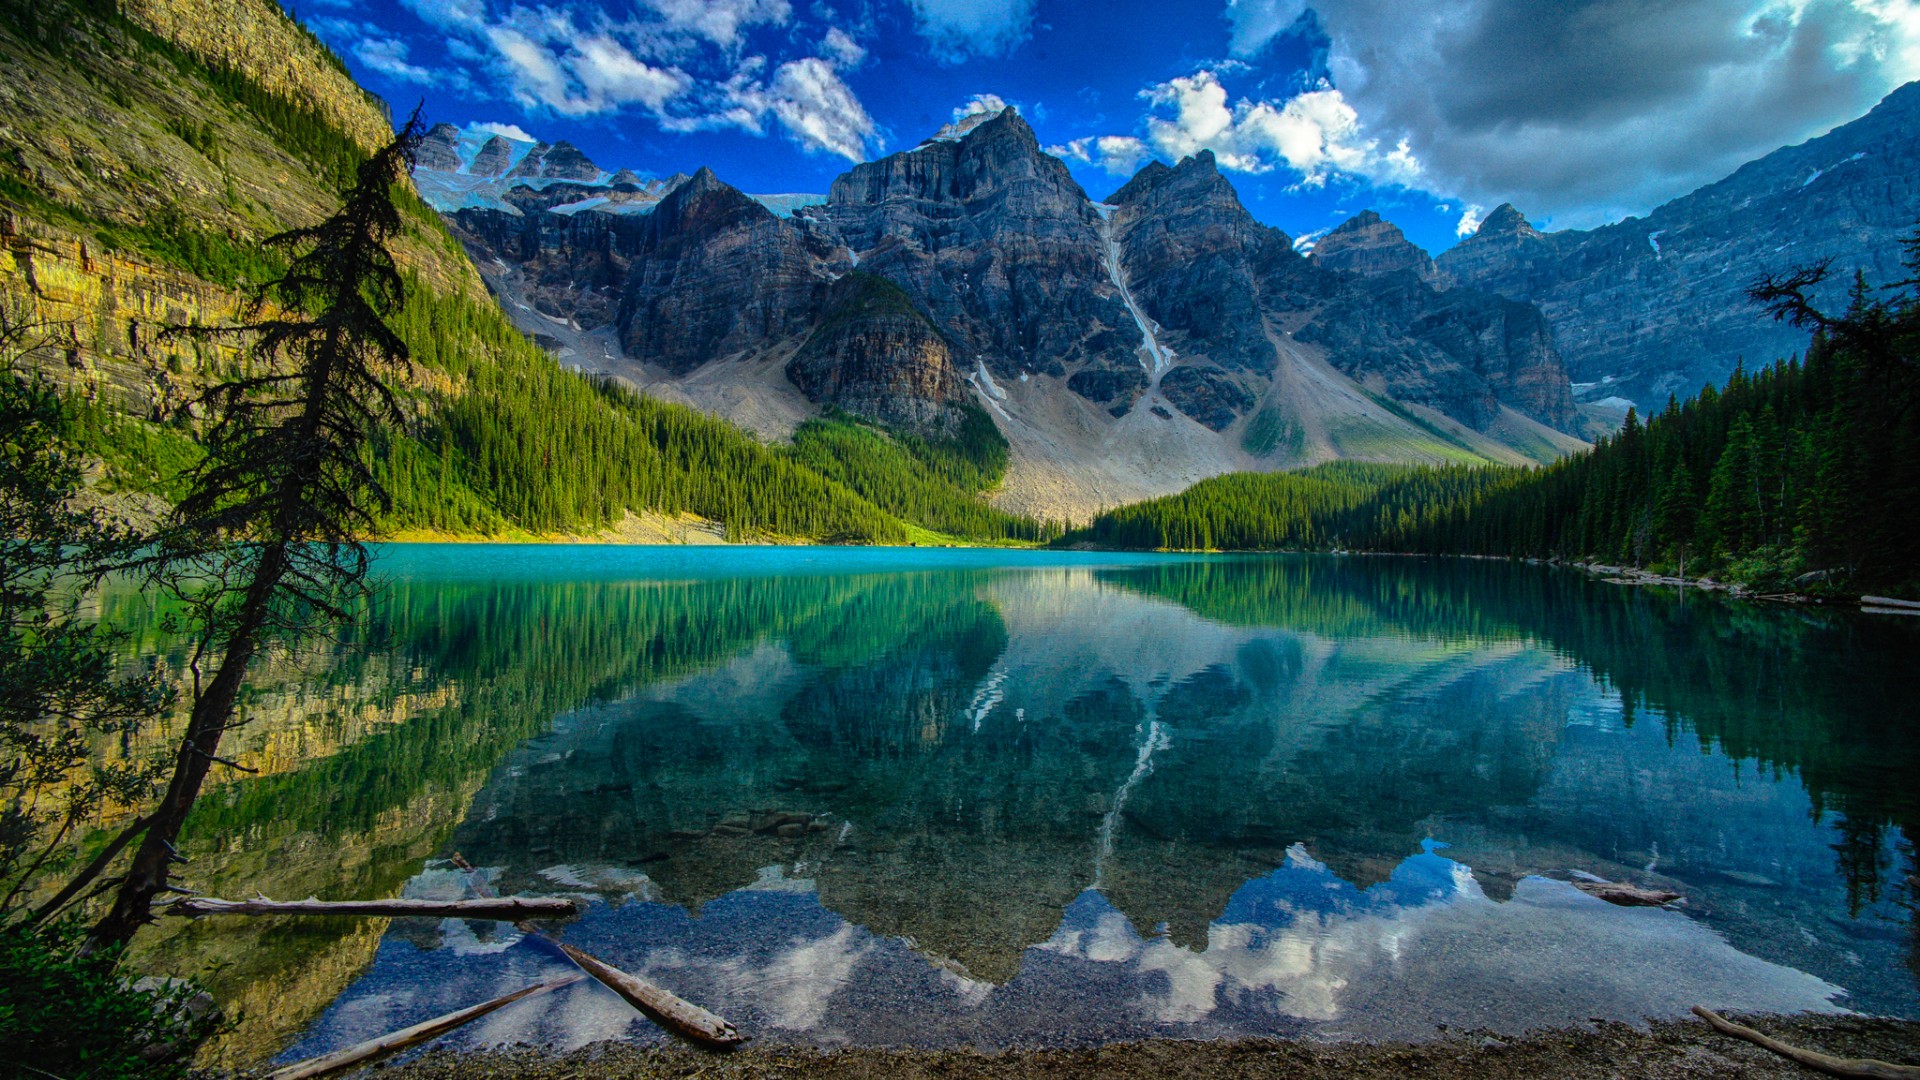 加拿大风景树木 山 湖水 自然风景图片桌面壁纸 彼岸壁纸手机版